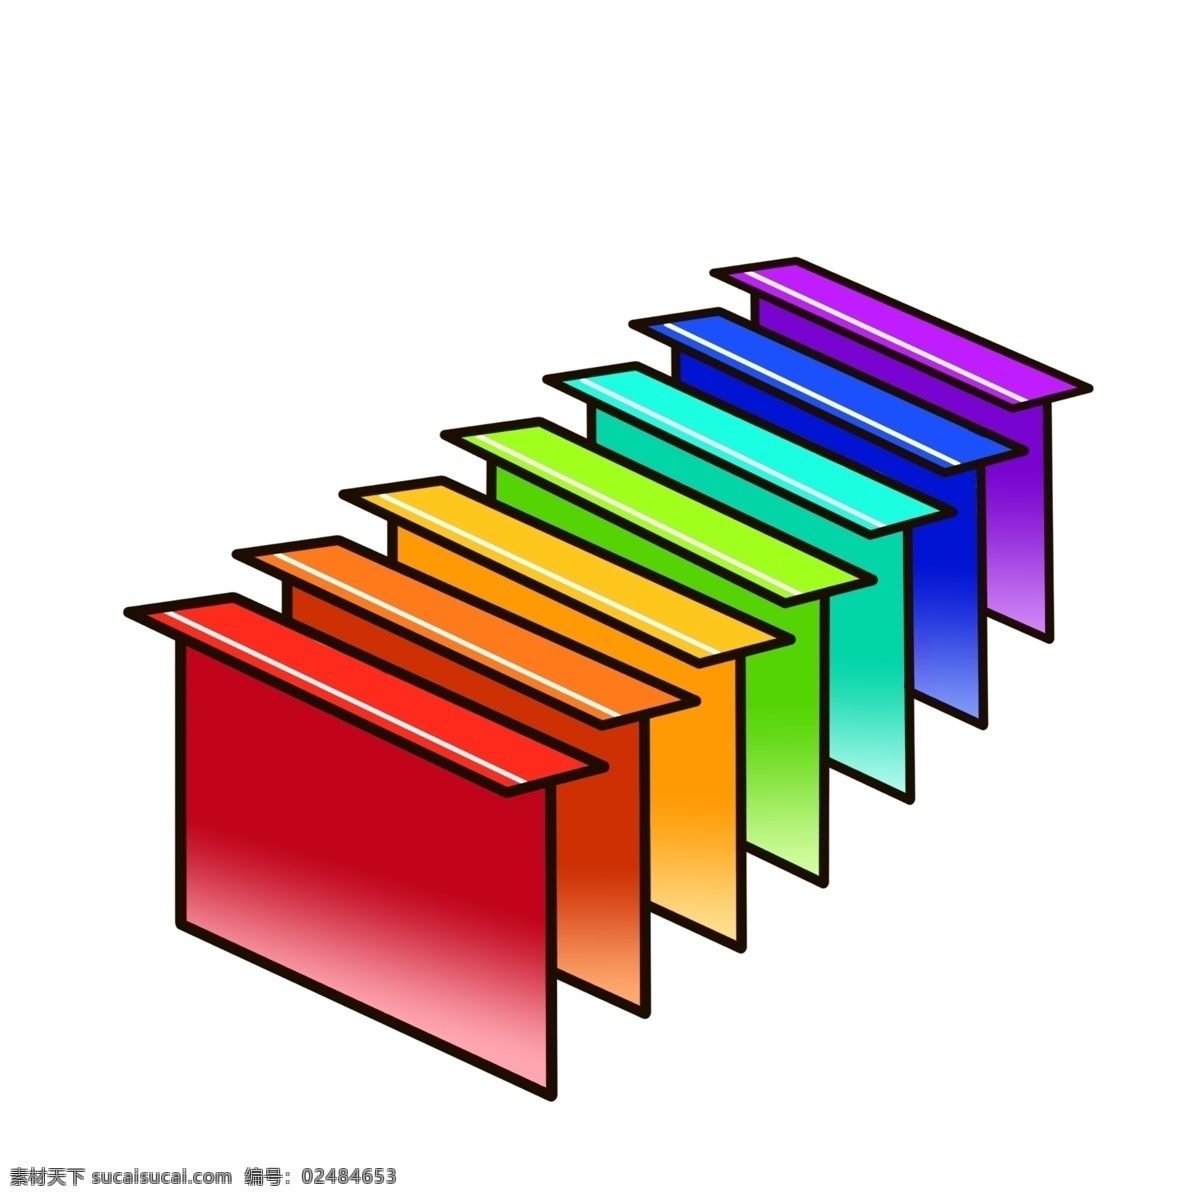 彩色 图案 楼梯 插图 对称的楼梯 彩色楼梯 精美的设计 平面设计 创意插画 登高的楼梯 现代楼梯